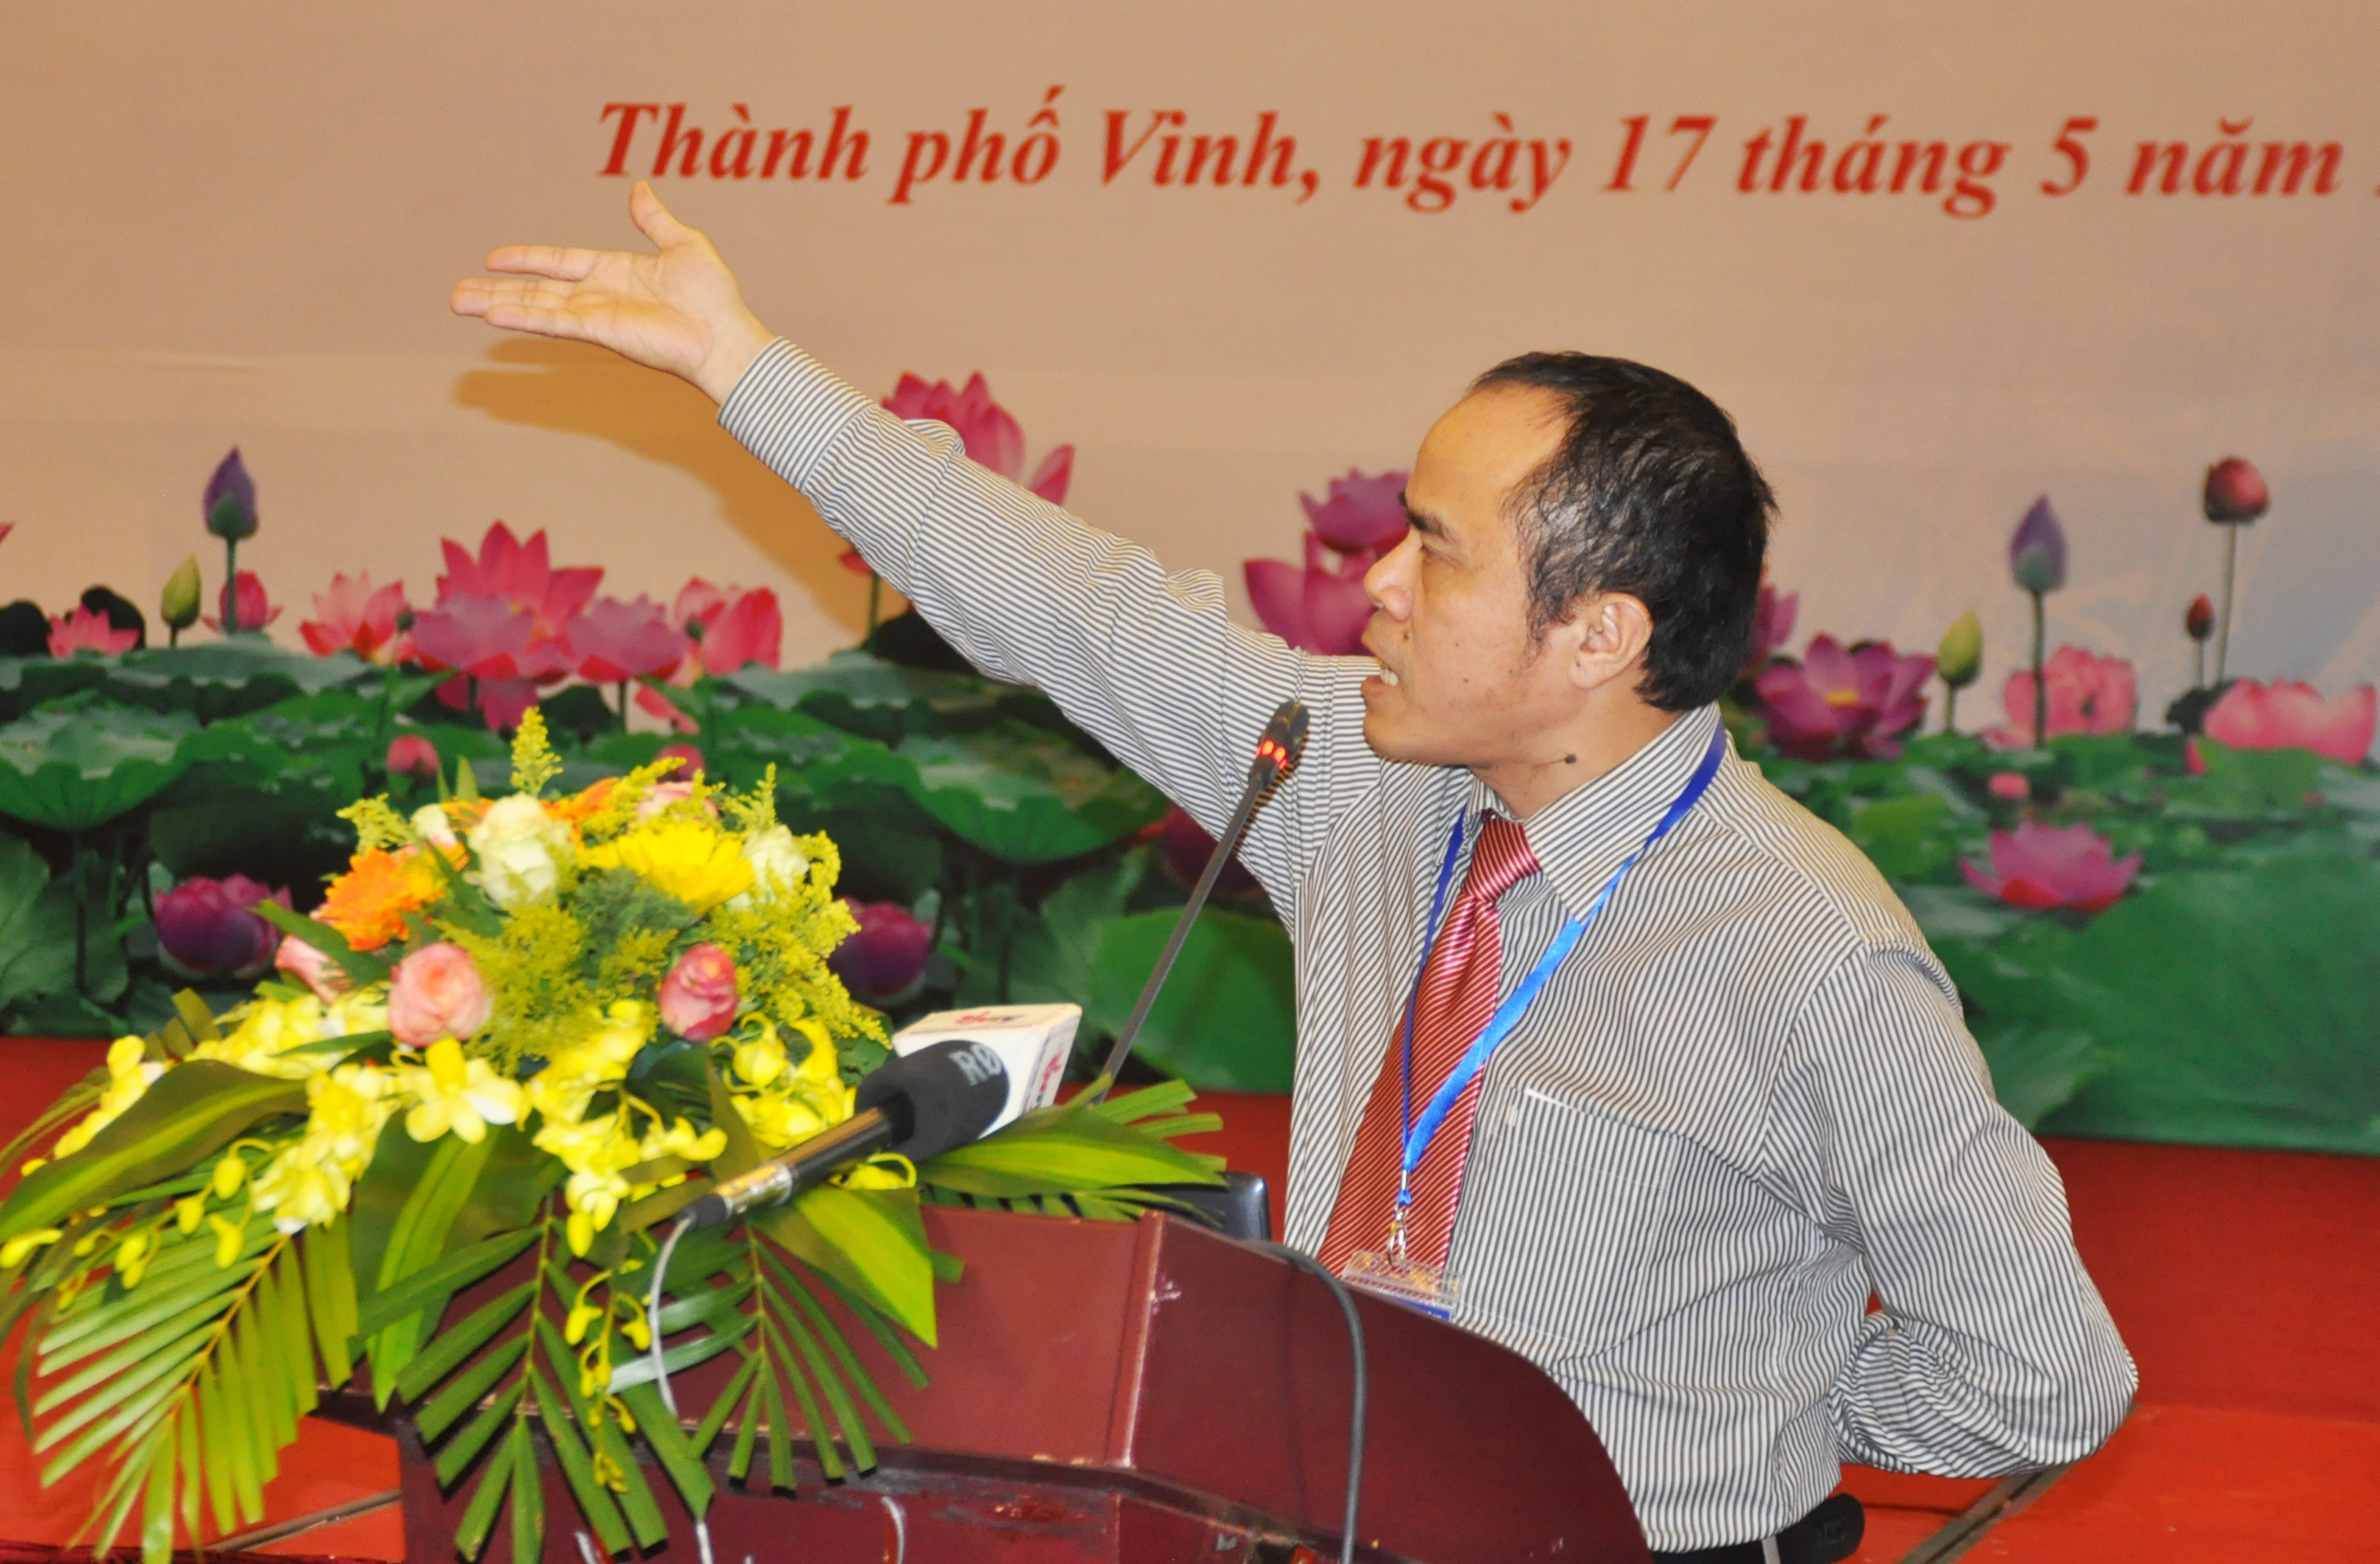 TS Lê xuân Sang – Viện phó Viện Kinh tế Việt Nam đặt vấn đề: Nghệ An nên hỗ trợ phát triển doanh nghiệp công nghiệp hỗ trợ trên địa bàn như thế nào?